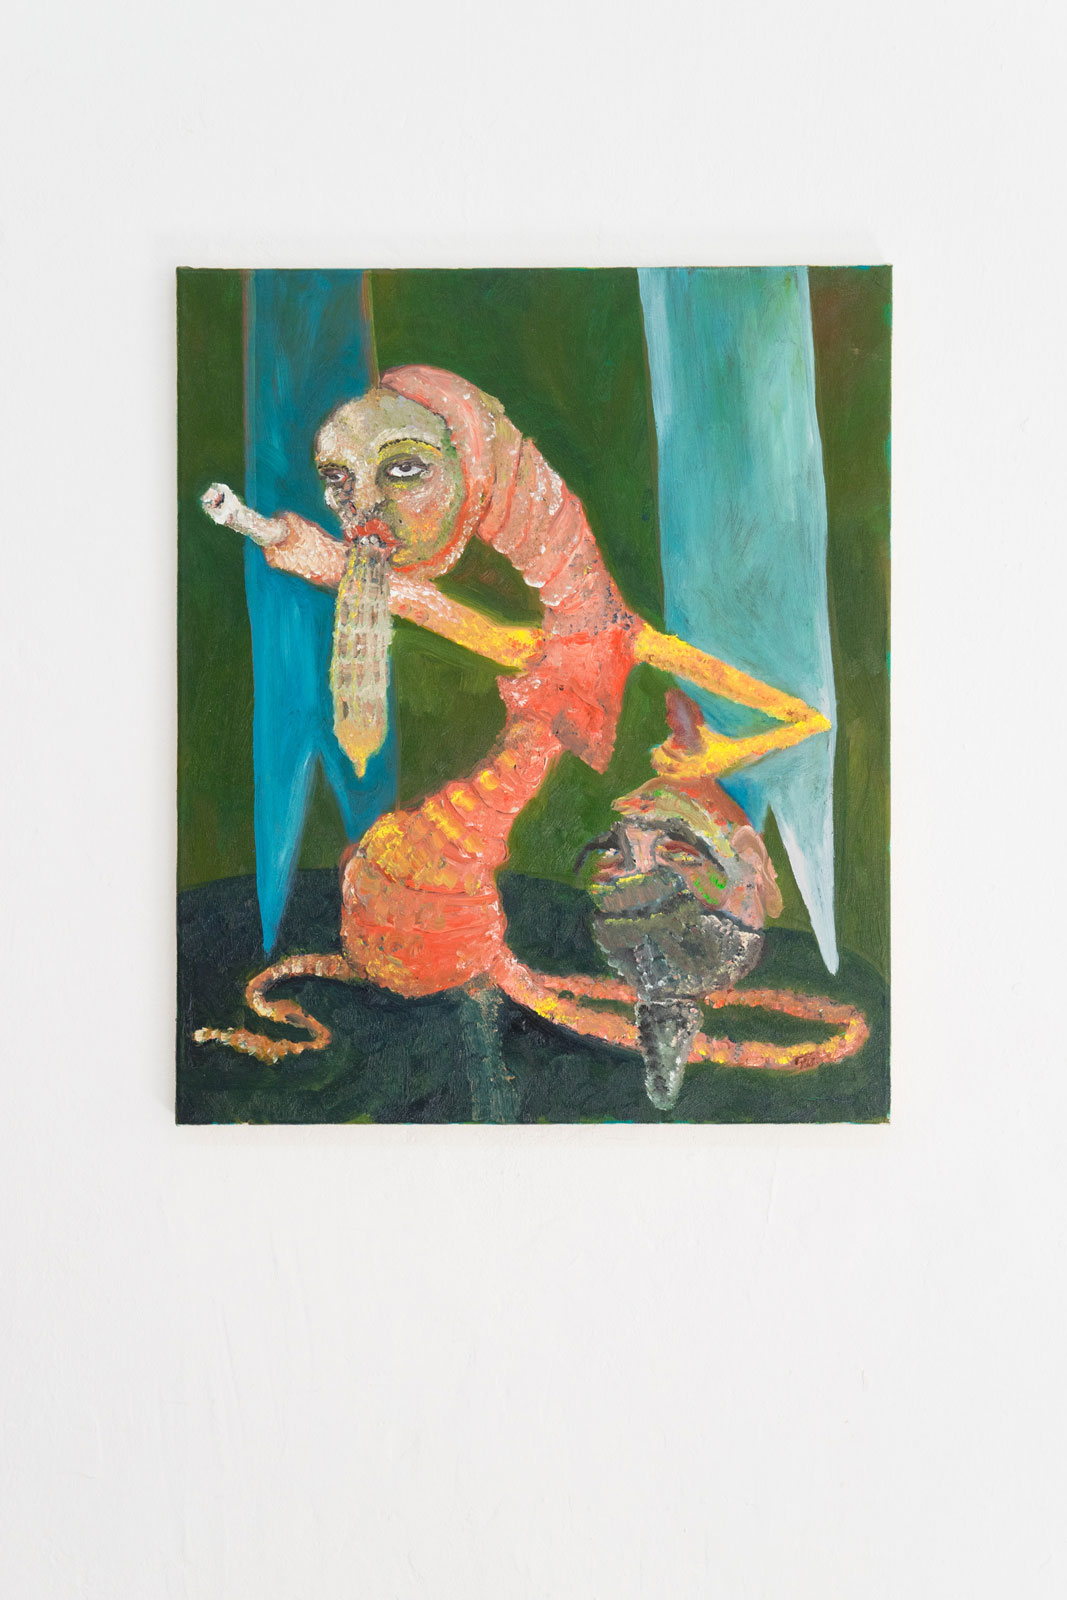 Joseph Geagan, Bone Frau, 2018, Oil on canvas, 60 x 50 cm